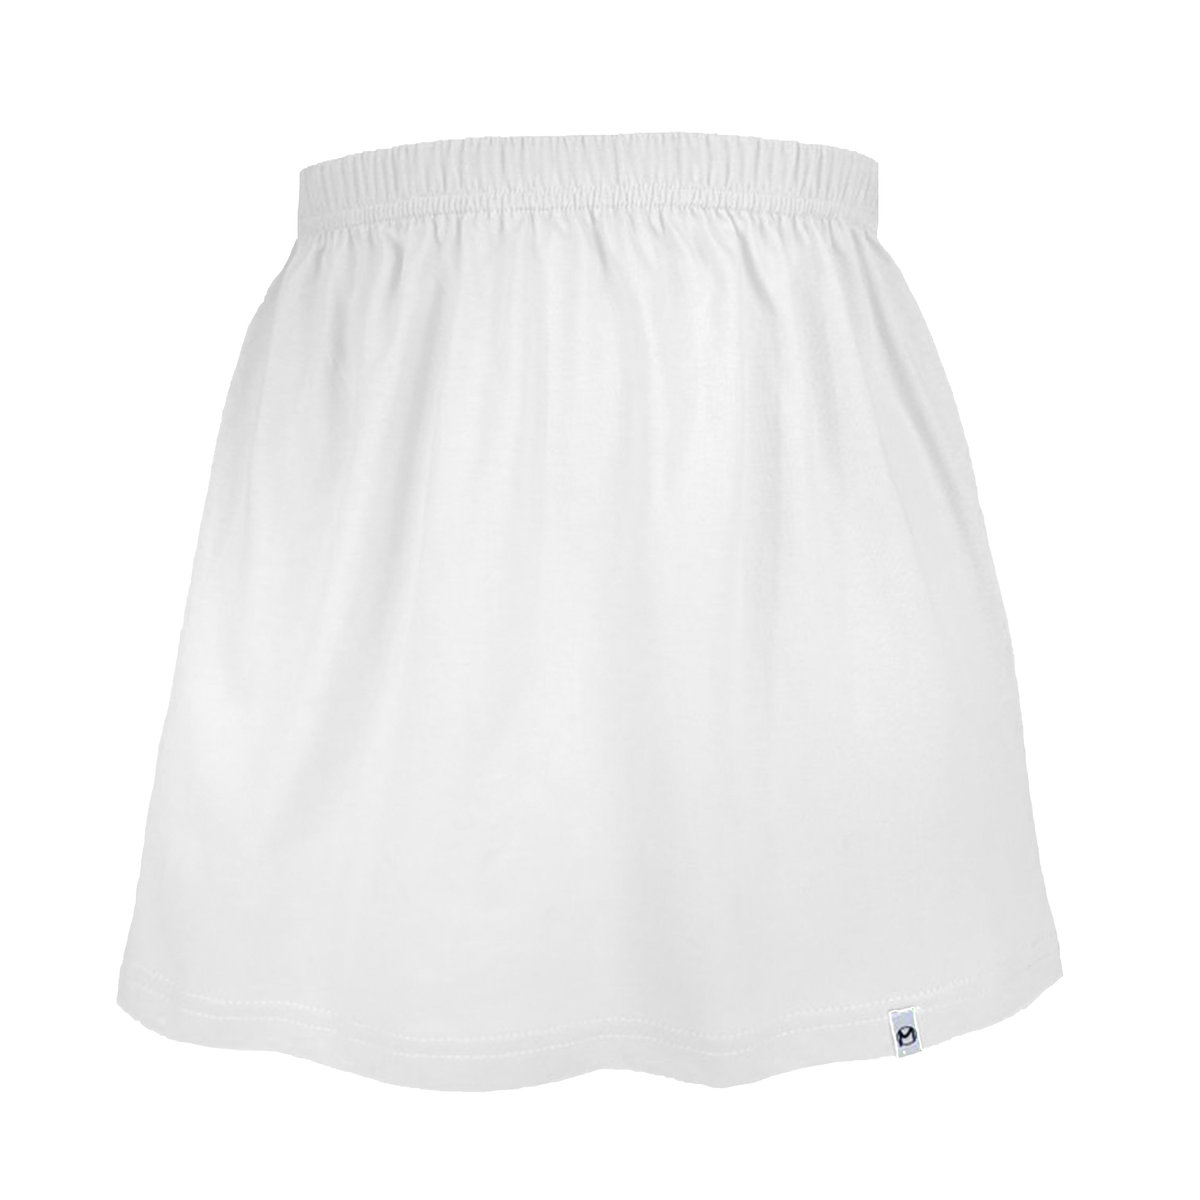 Biała spódniczka dla dziewczynki bawełniana spódnica dziecięca/ dziewczęca gładka 128/134